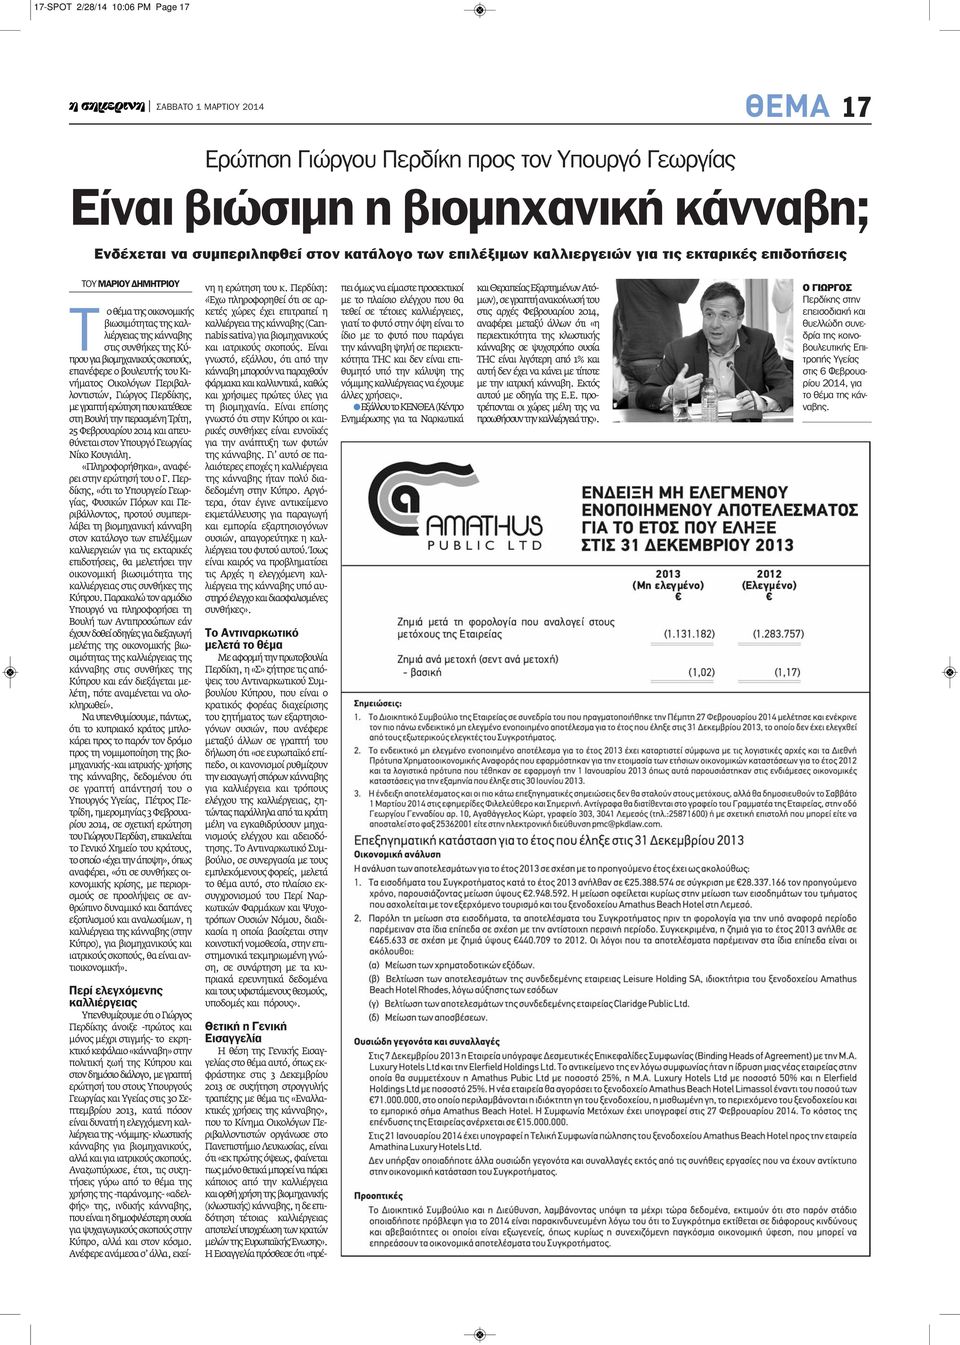 Κινήματος Οικολόγων Περιβαλλοντιστών, Γιώργος Περδίκης, με γραπτή ερώτηση που κατέθεσε στη Βουλή την περασμένη Τρίτη, 25 Φεβρουαρίου 2014 και απευθύνεται στον Υπουργό Γεωργίας Νίκο Κουγιάλη.